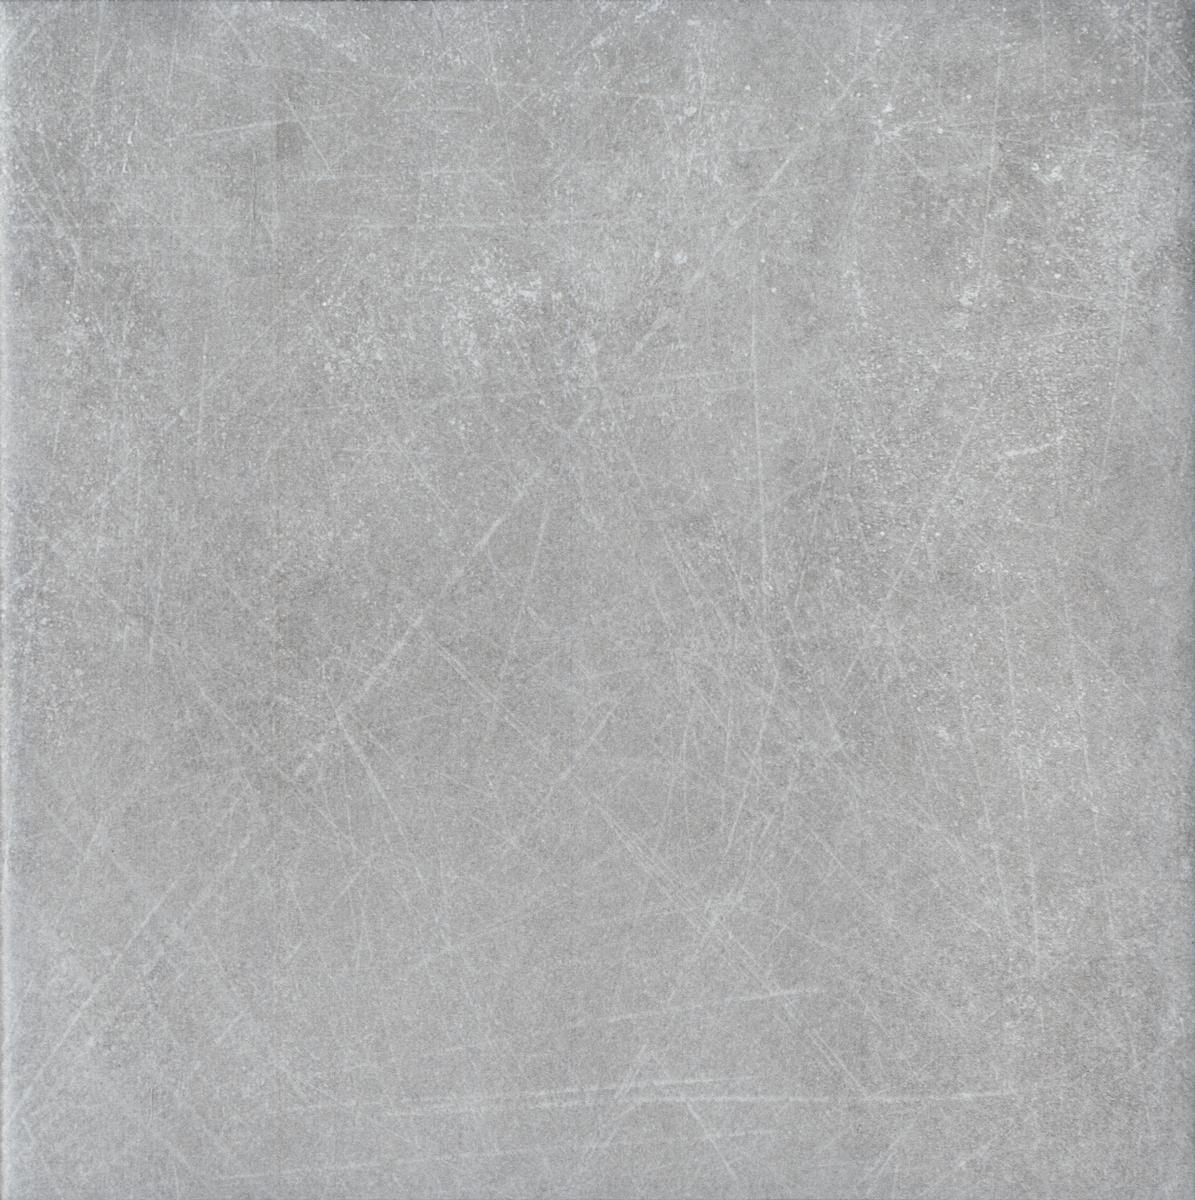 Floors 2000 - Serenity 8 in. x 8 in. Porcelain Tile - Grey